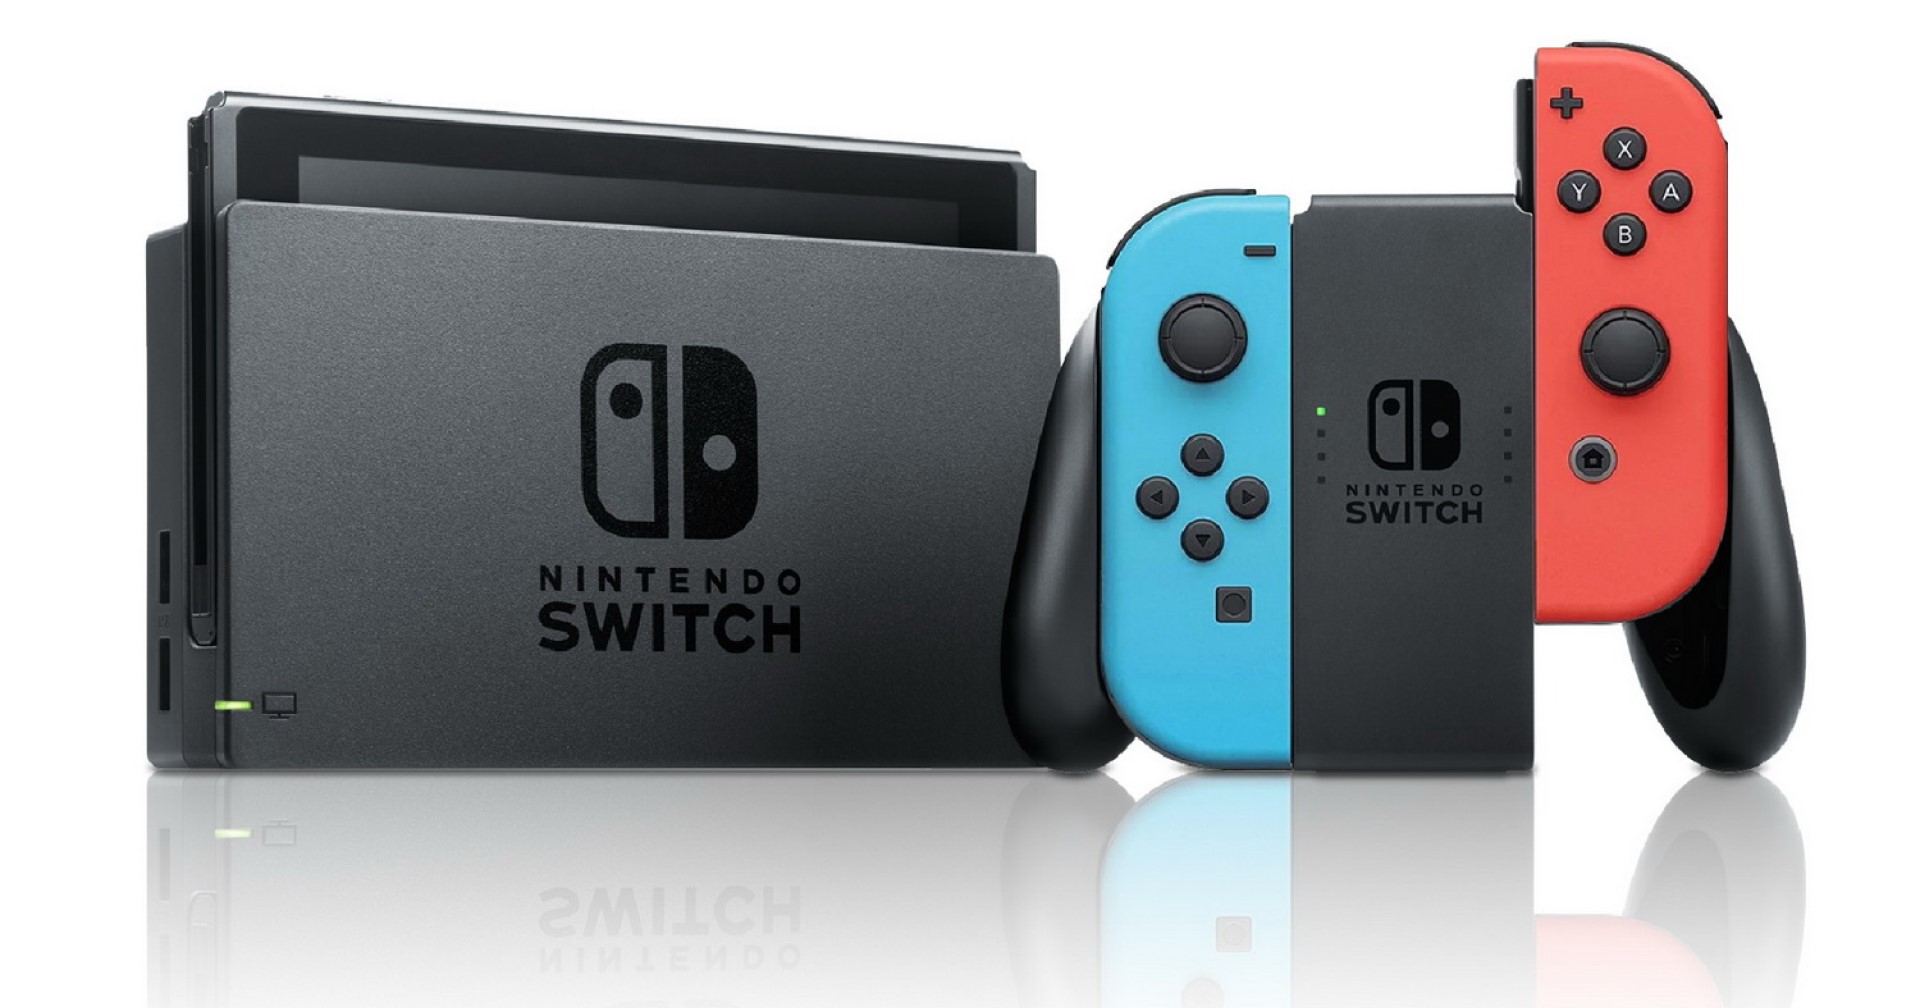 ยอดขาย Nintendo Switch แซงยอดขายตลอดกาลของ Wii แล้ว